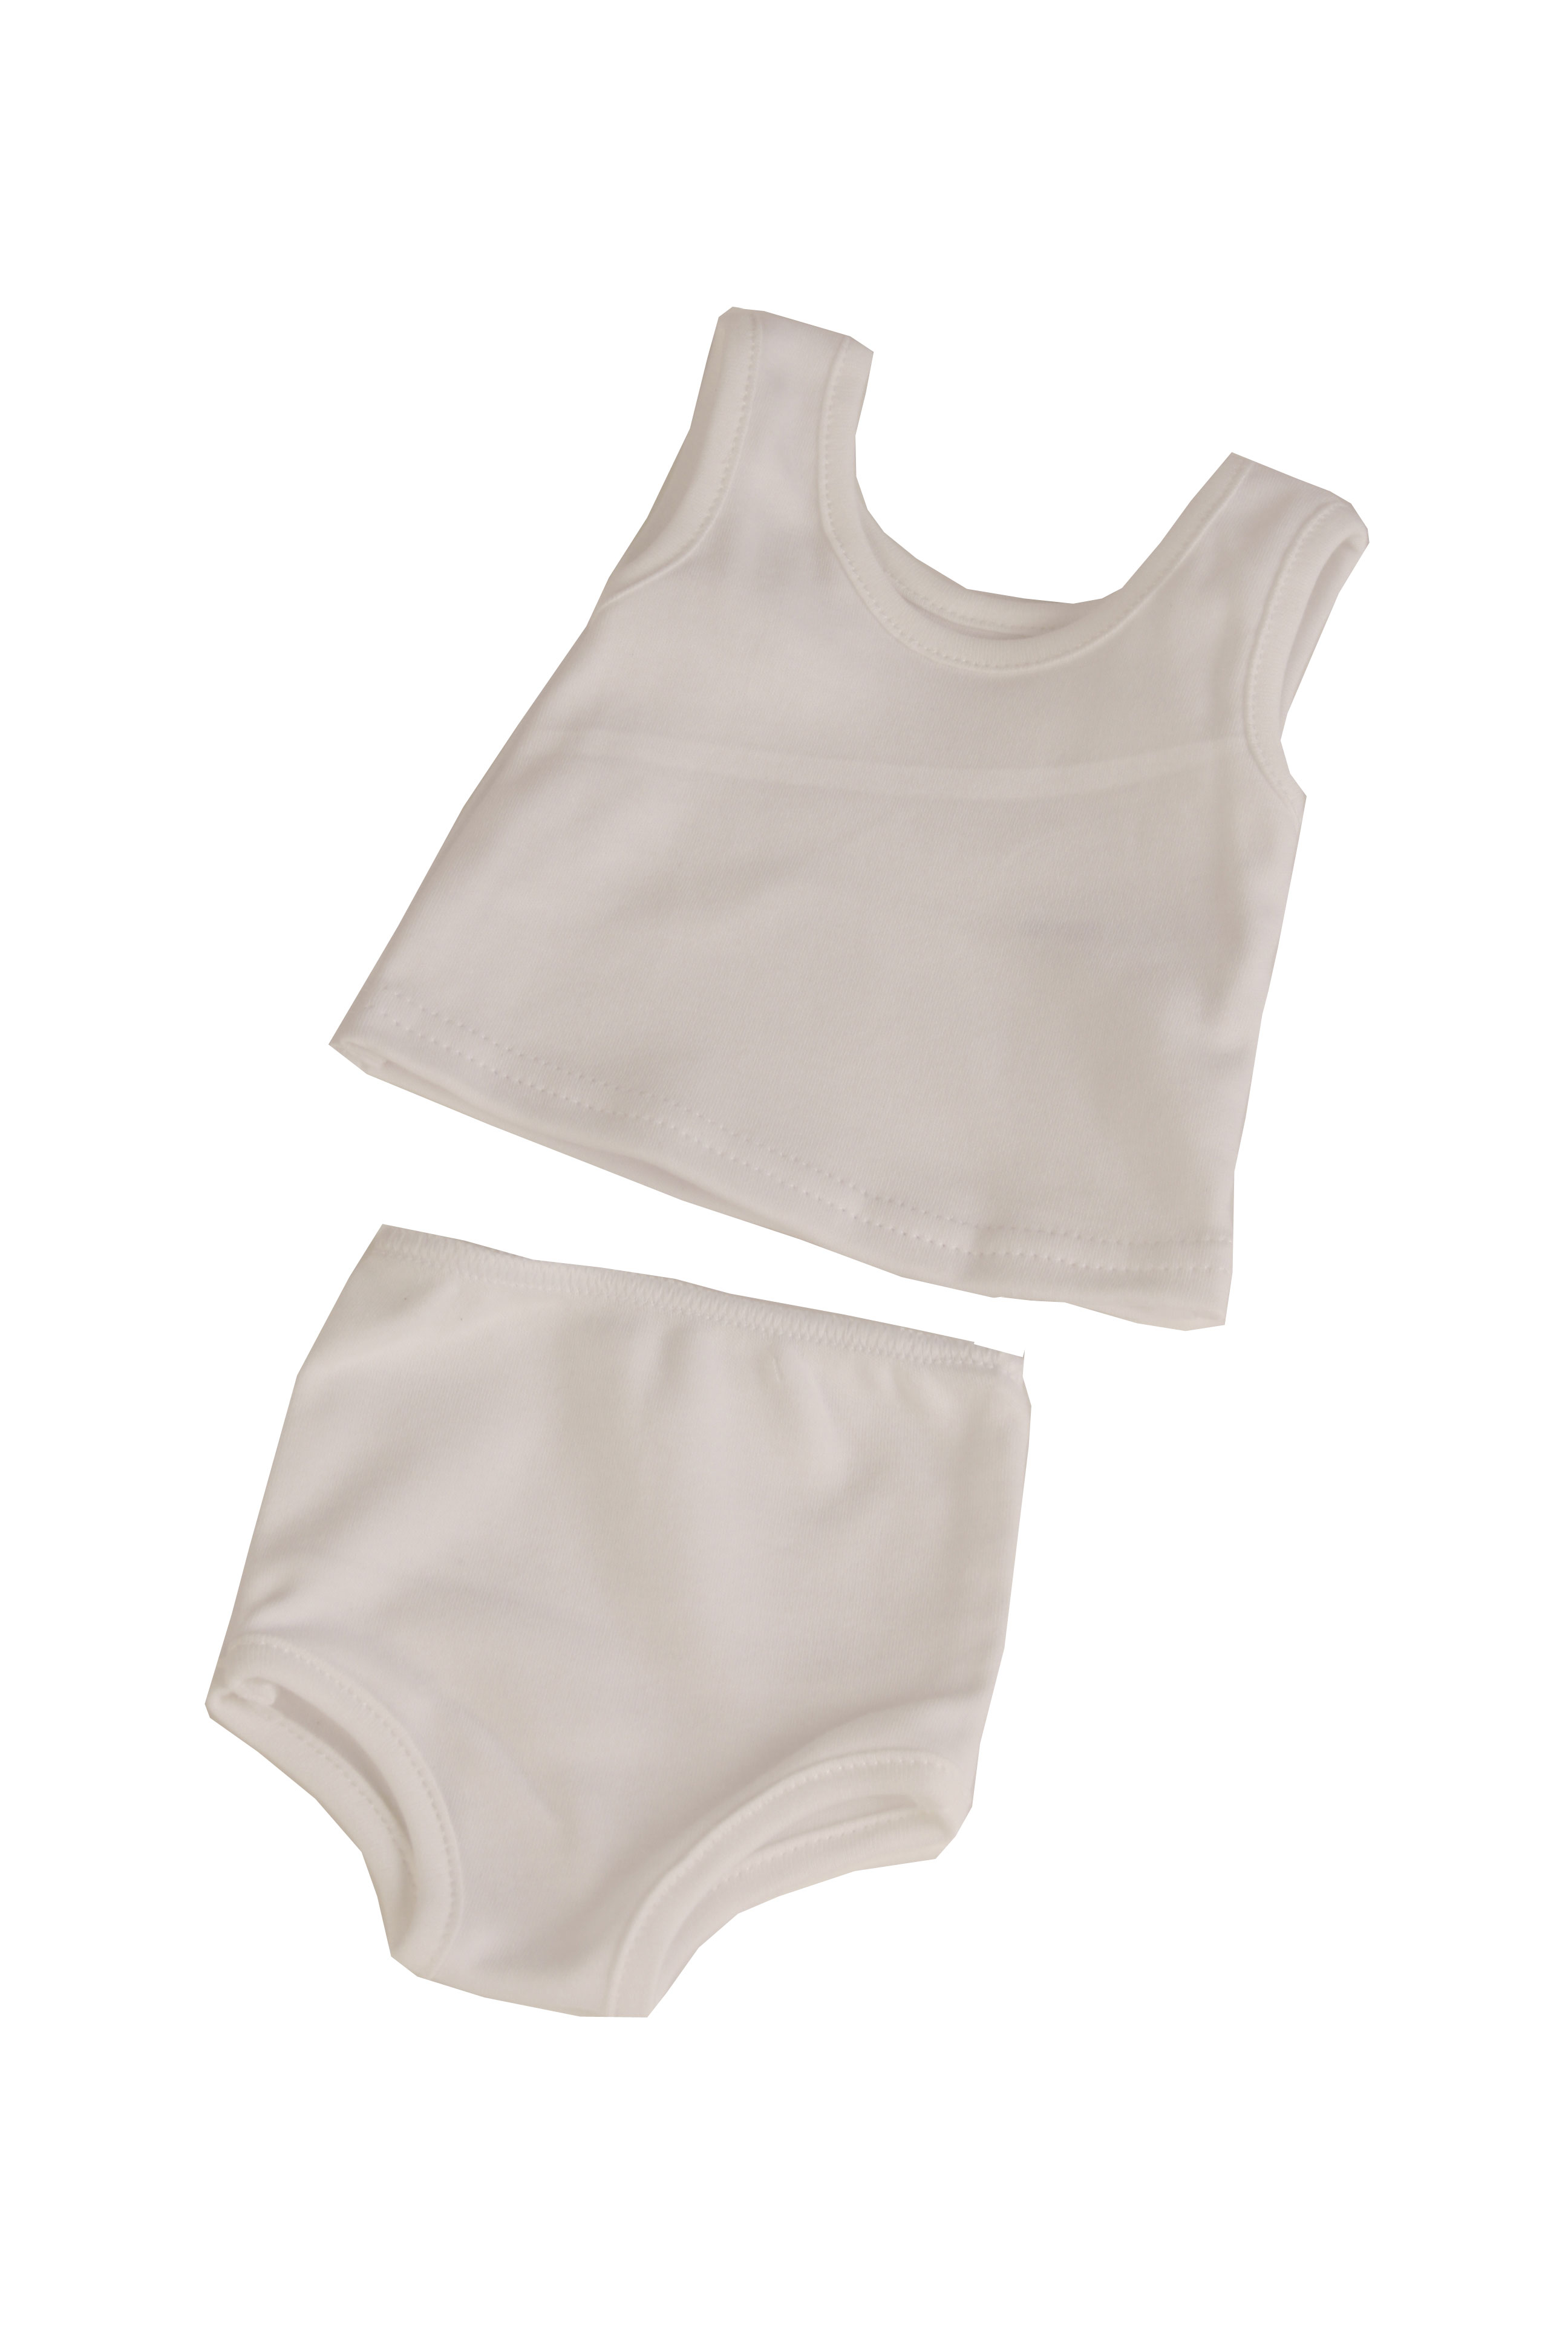 Mini Unterwäsche Unterhose Slip Puppenkleidung Für 18" weibliche Puppe 